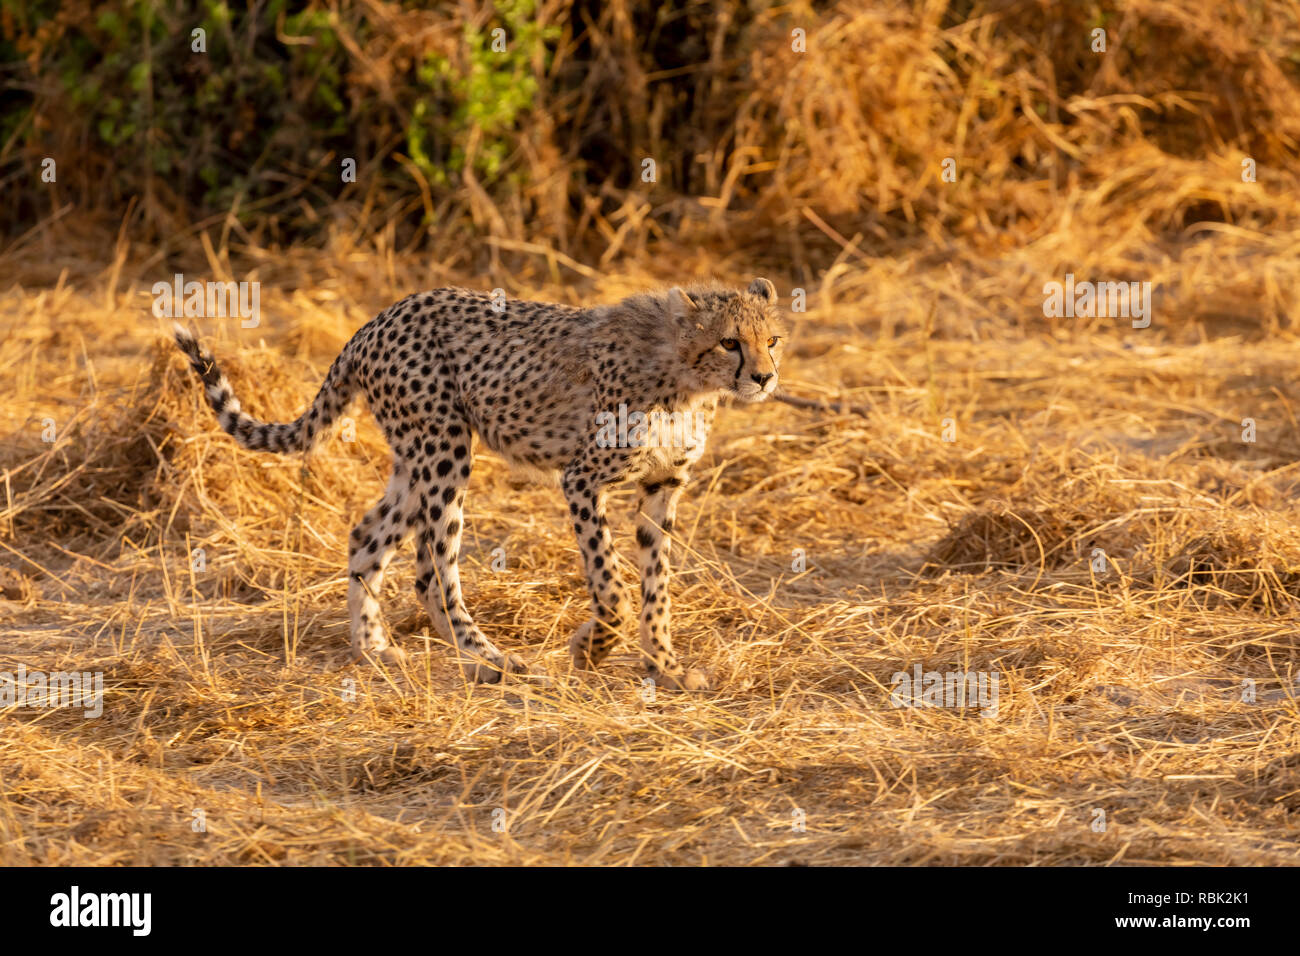 Cheetah (Acinonyx jubatus) cub hunting on the savannah in Amboseli National Park, Kenya Stock Photo